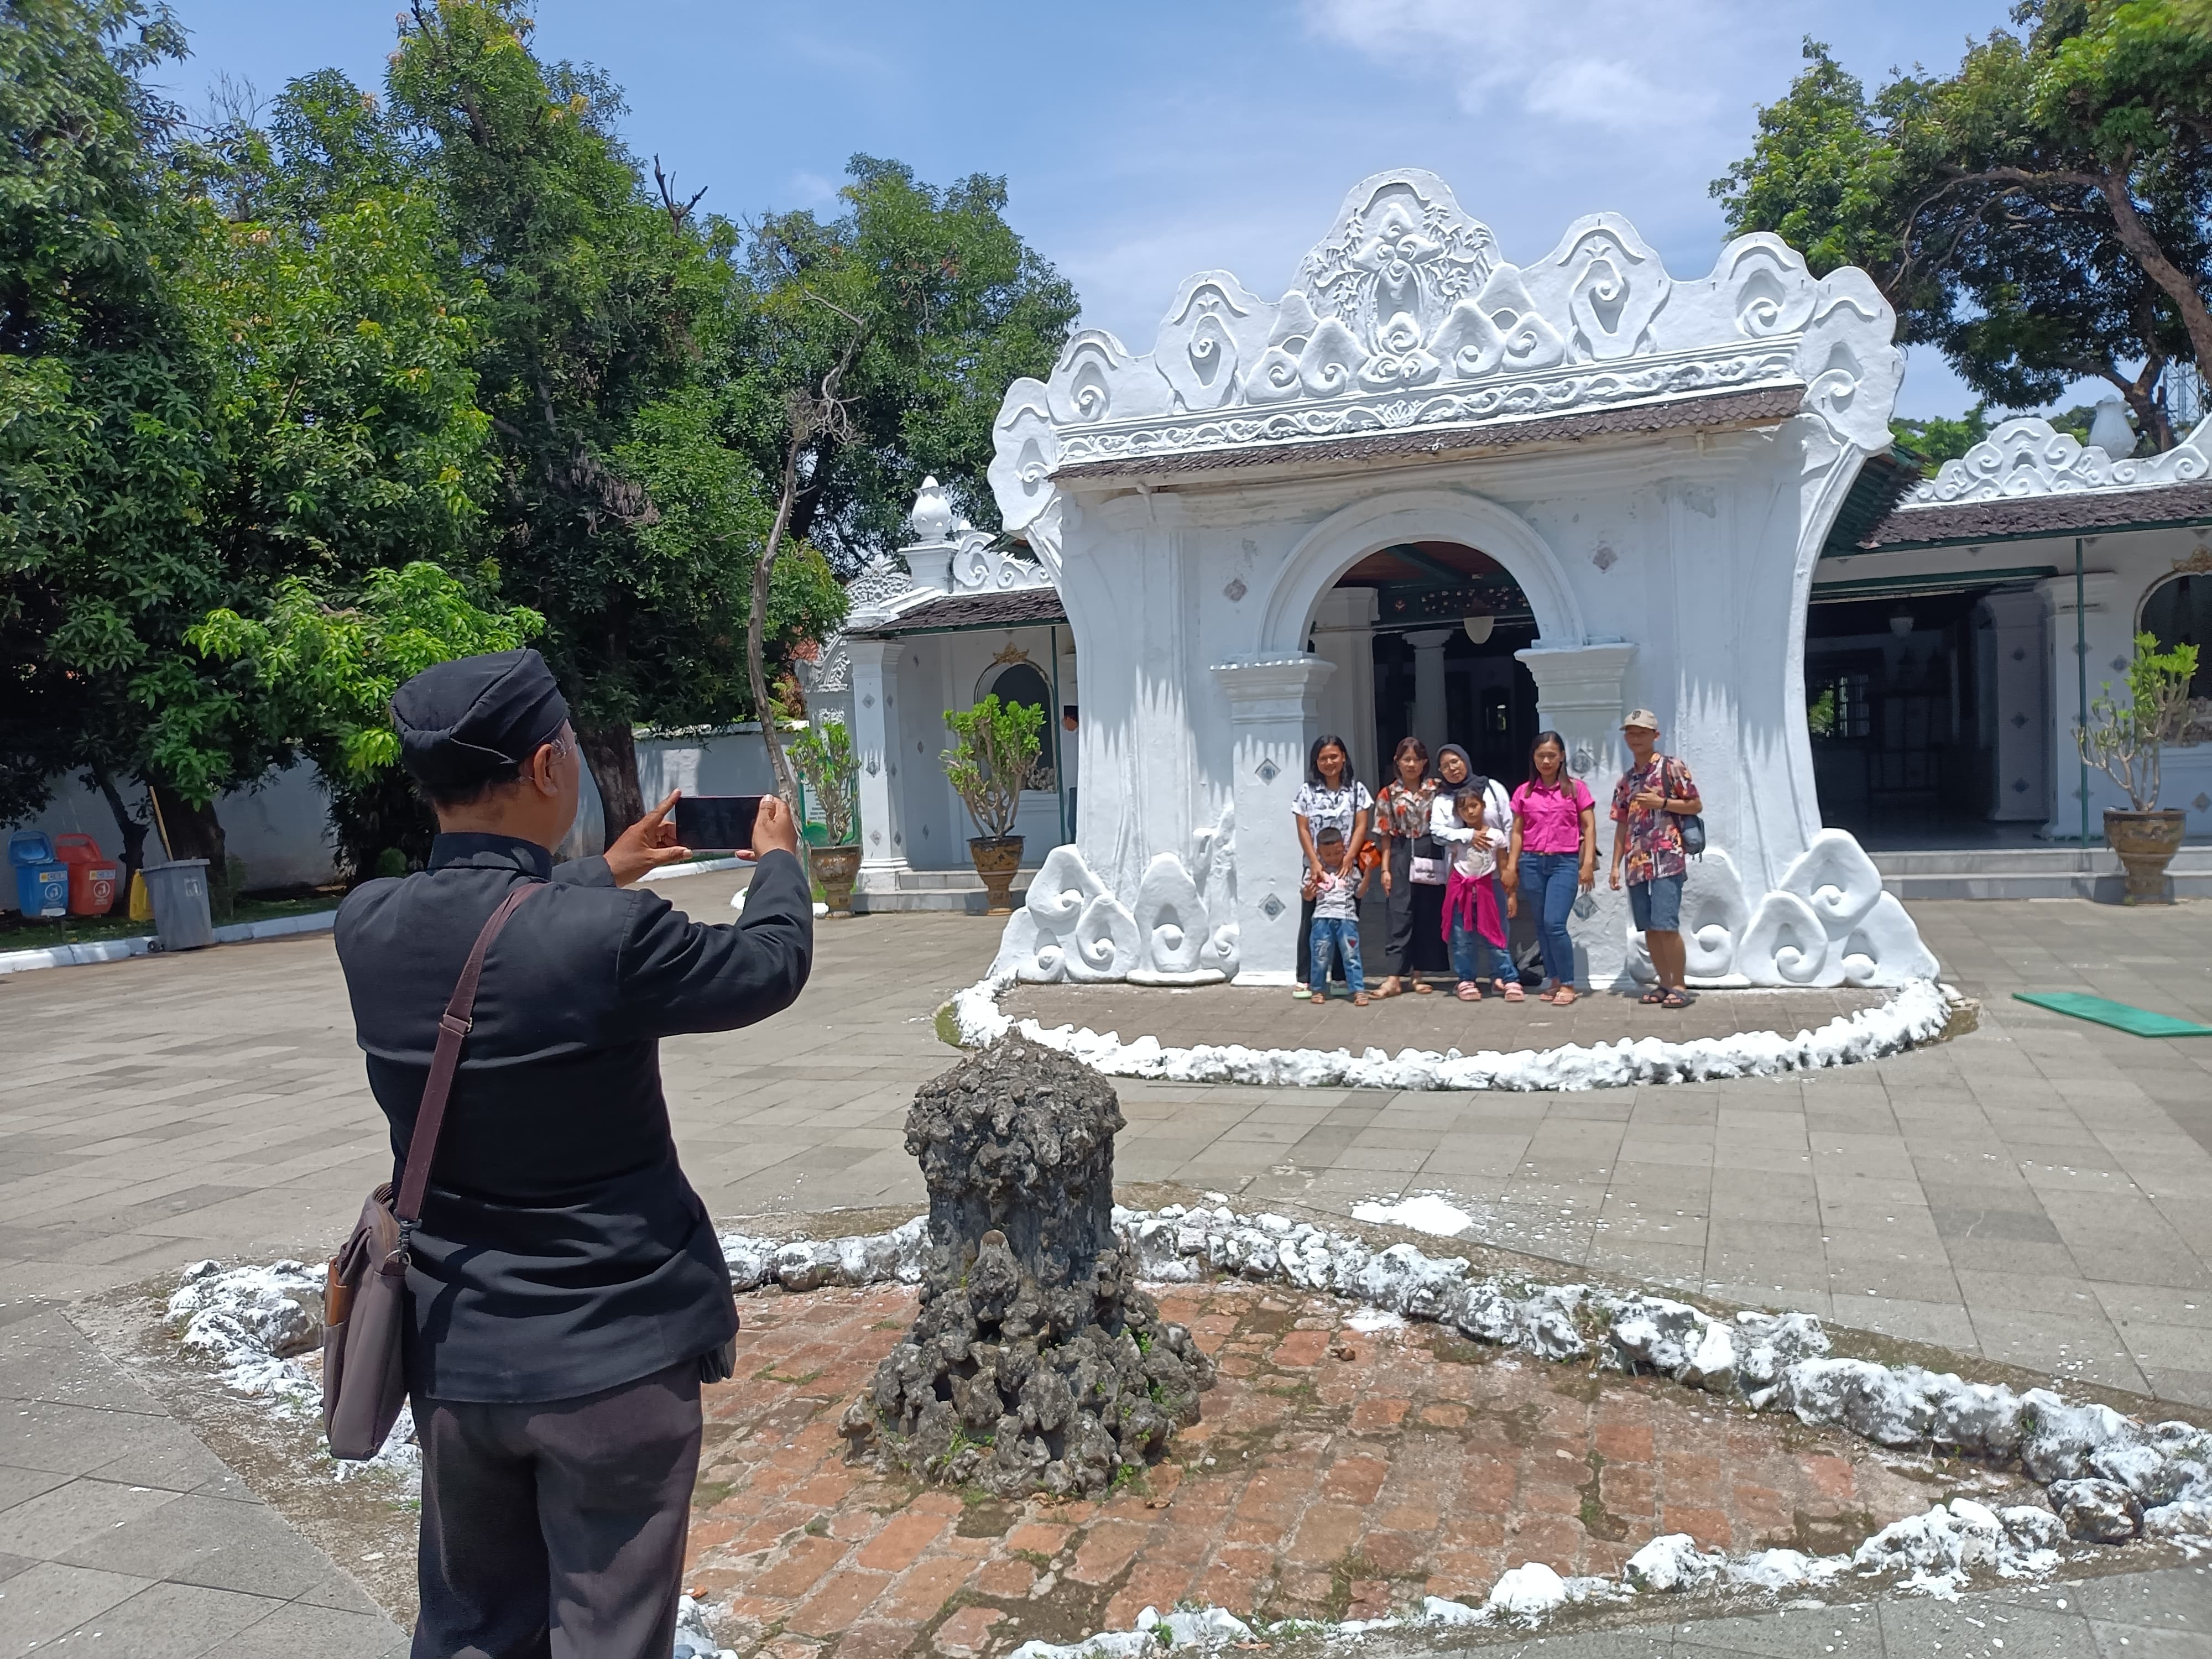 Kota Cirebon Dikunjungi 50 Ribu Wisatawan Saat Libur Lebaran